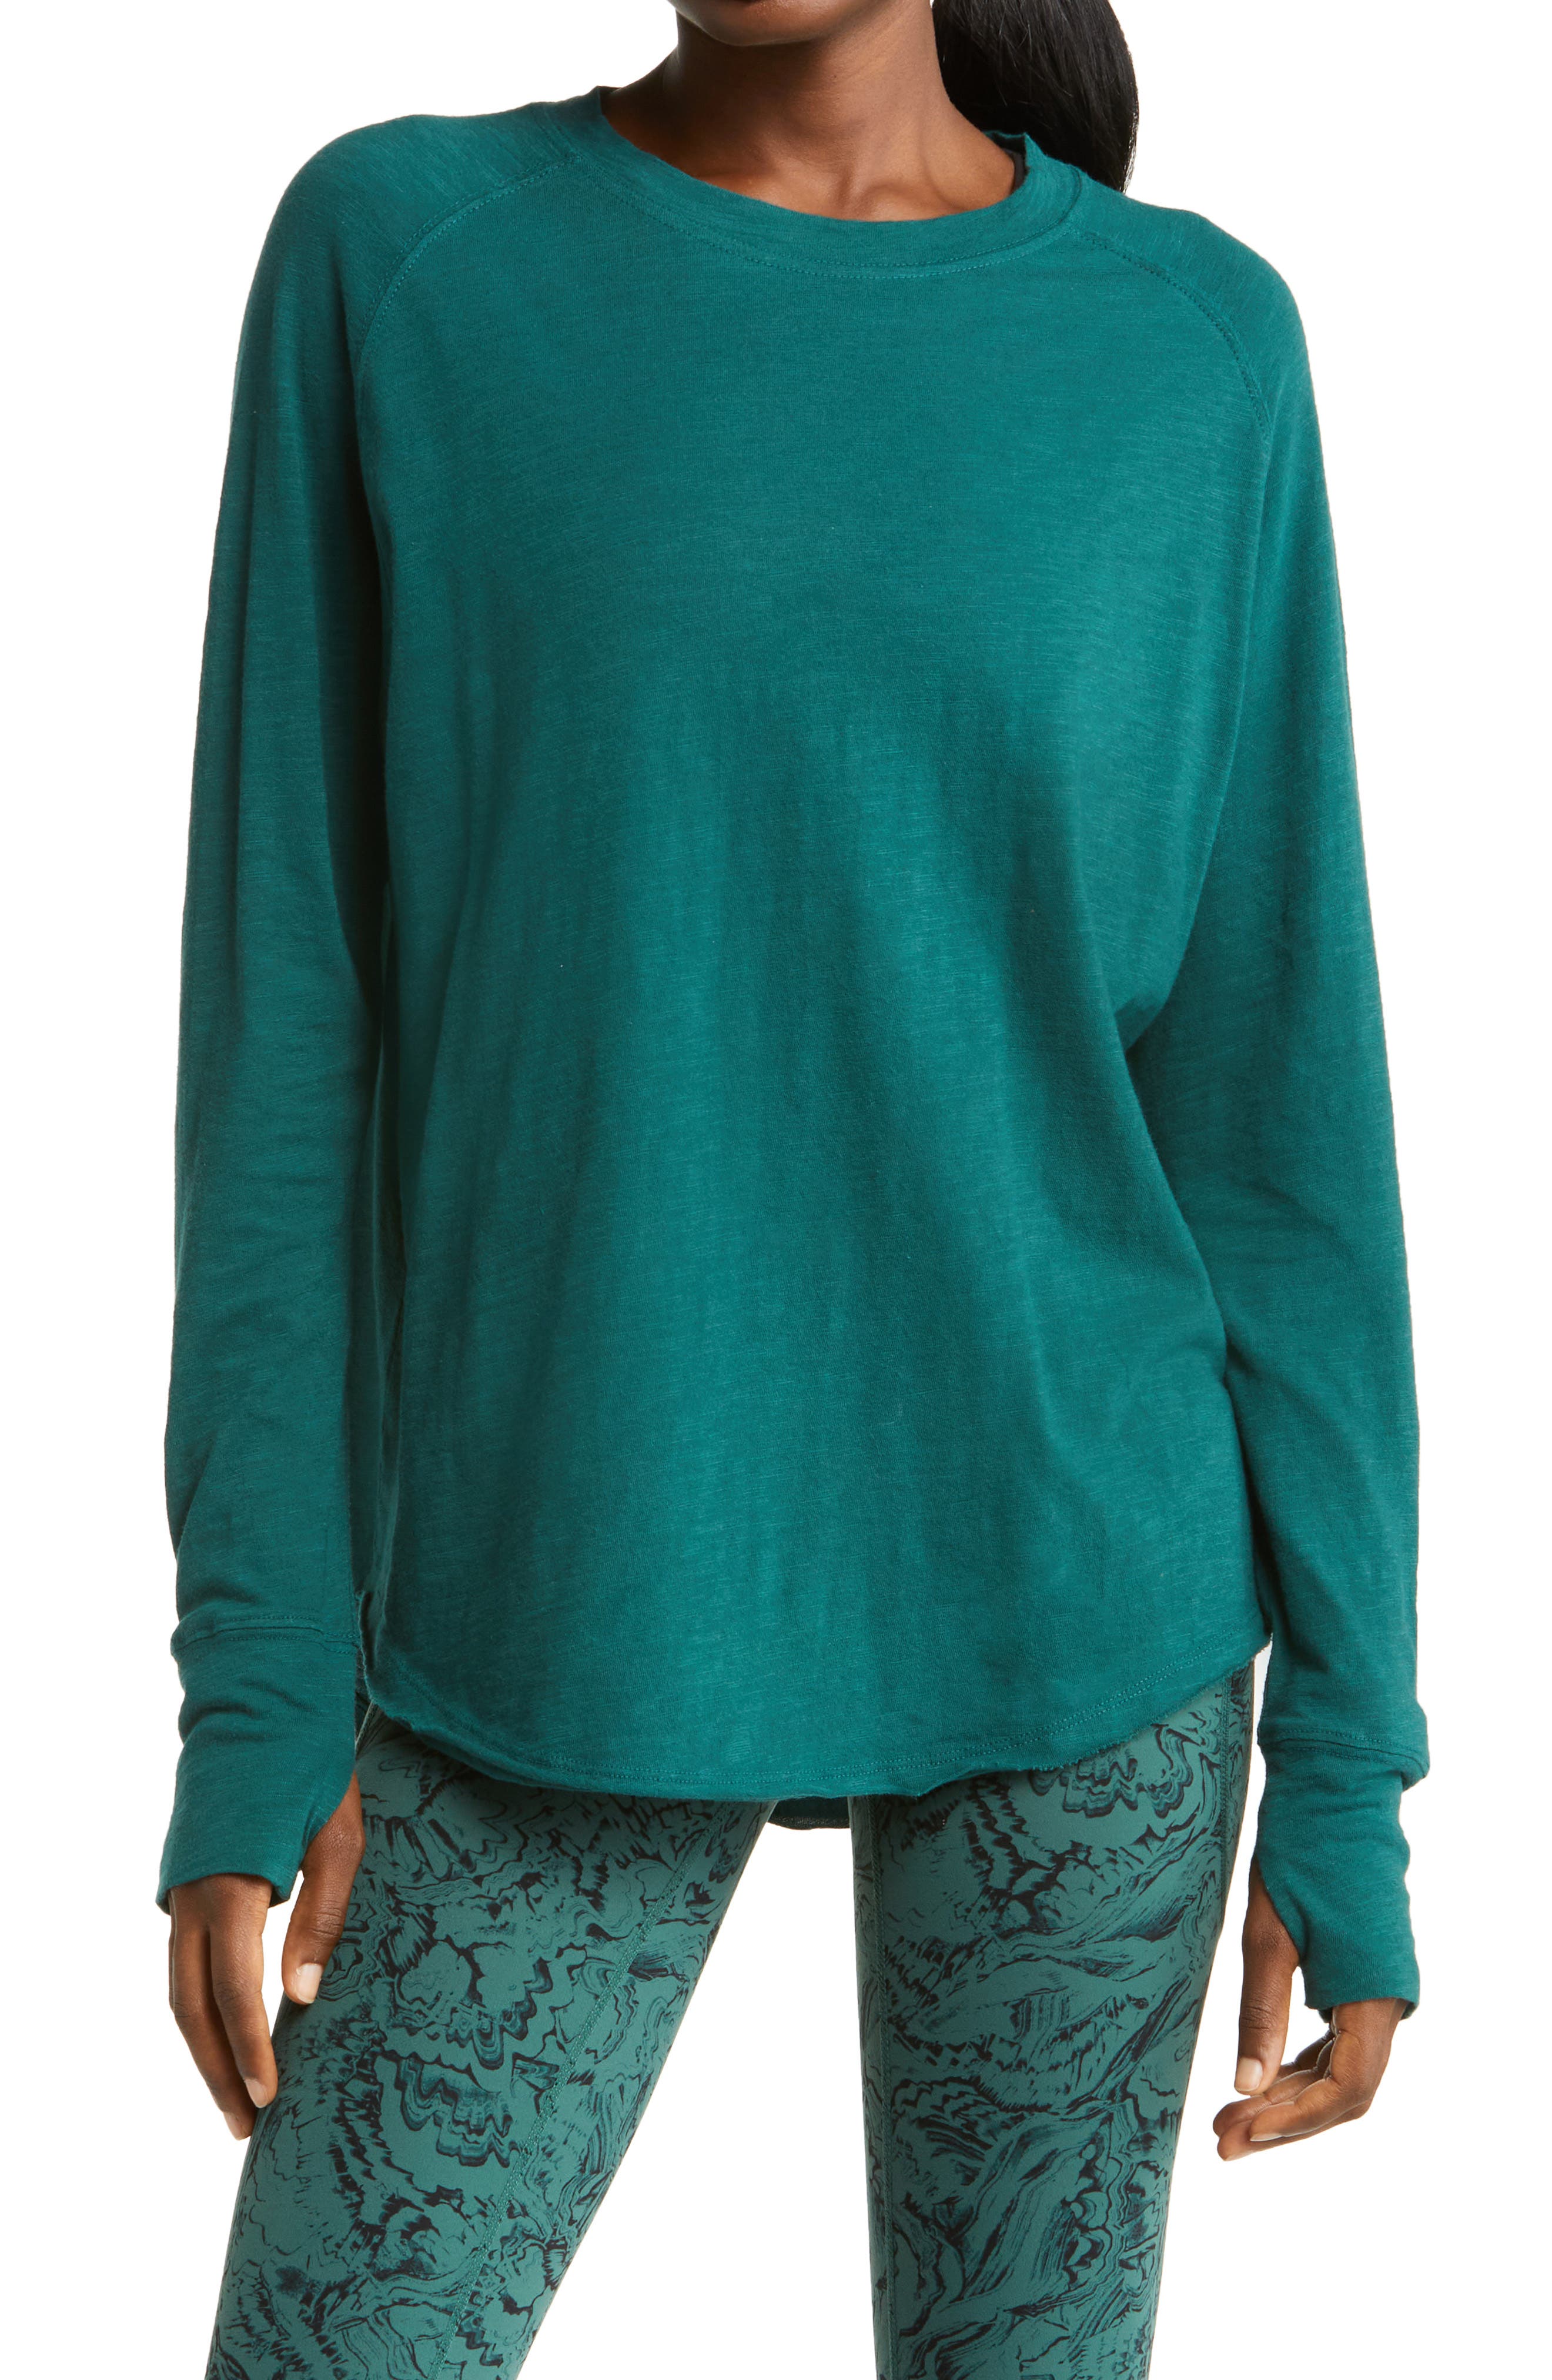 Green M WOMEN FASHION Shirts & T-shirts Casual discount 68% NoName blouse 